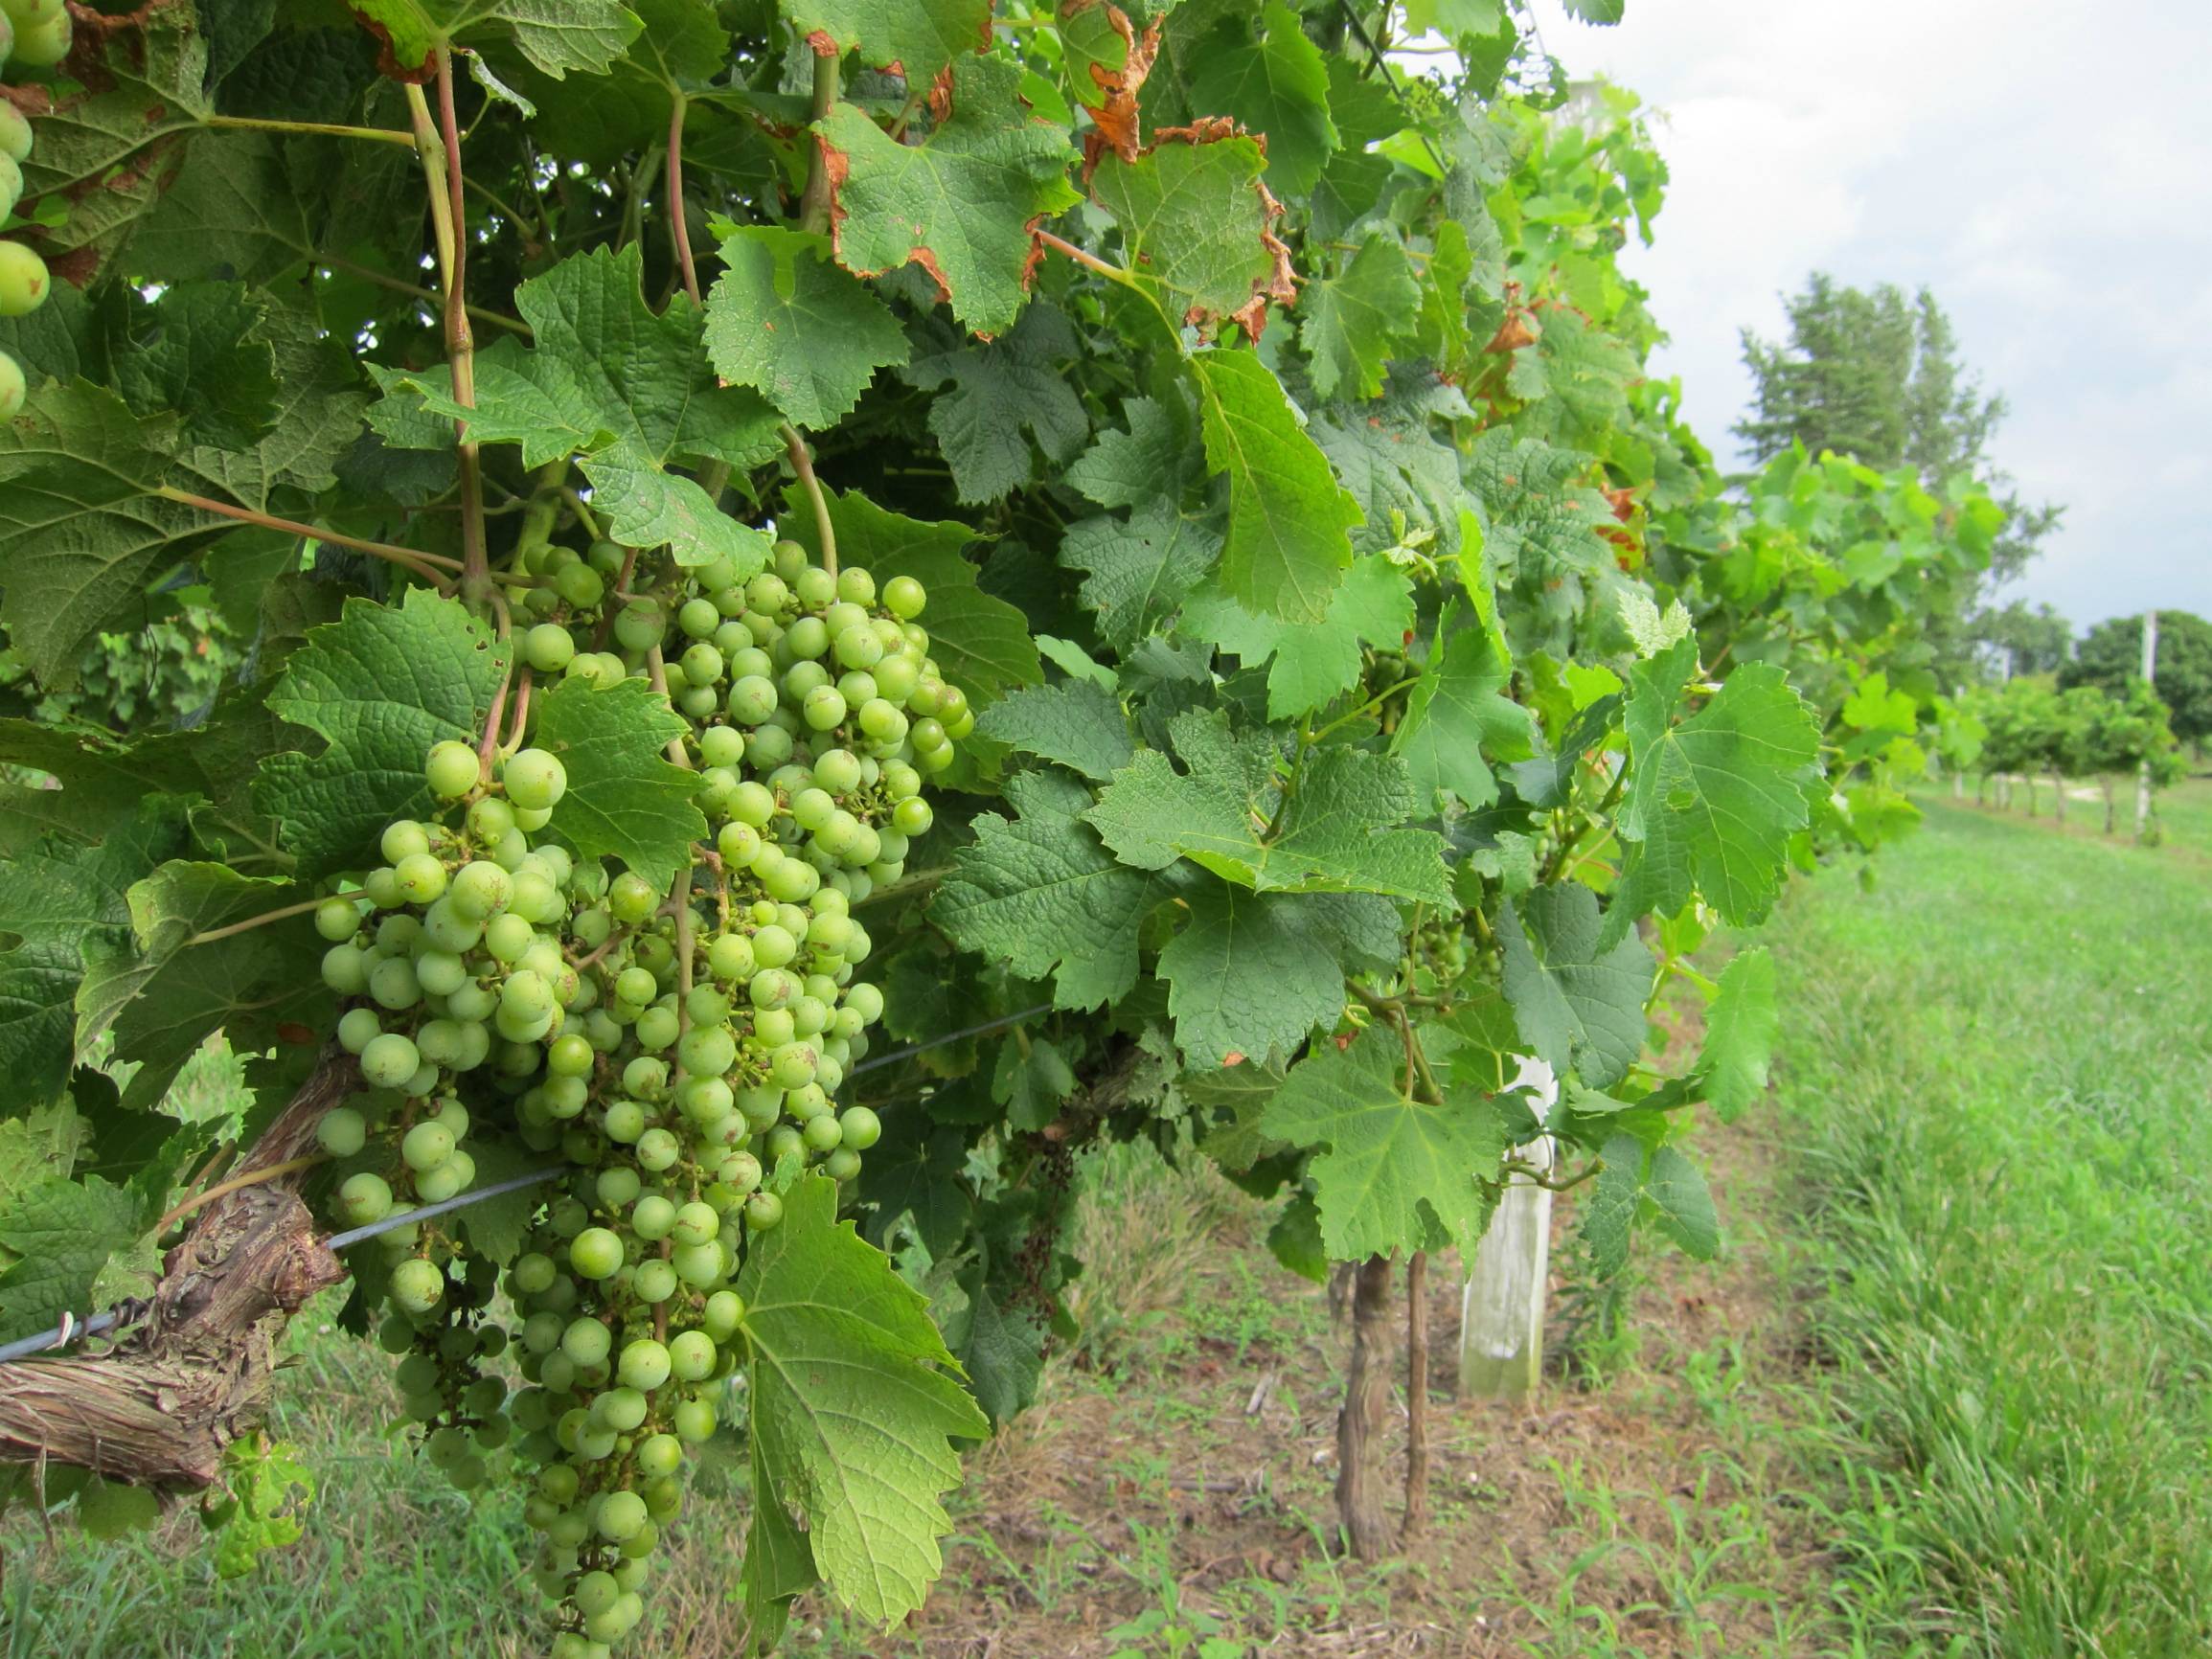 Выращивание винограда в сибири, особенности посадки и ухода для данного региона, в том числе для начинающих